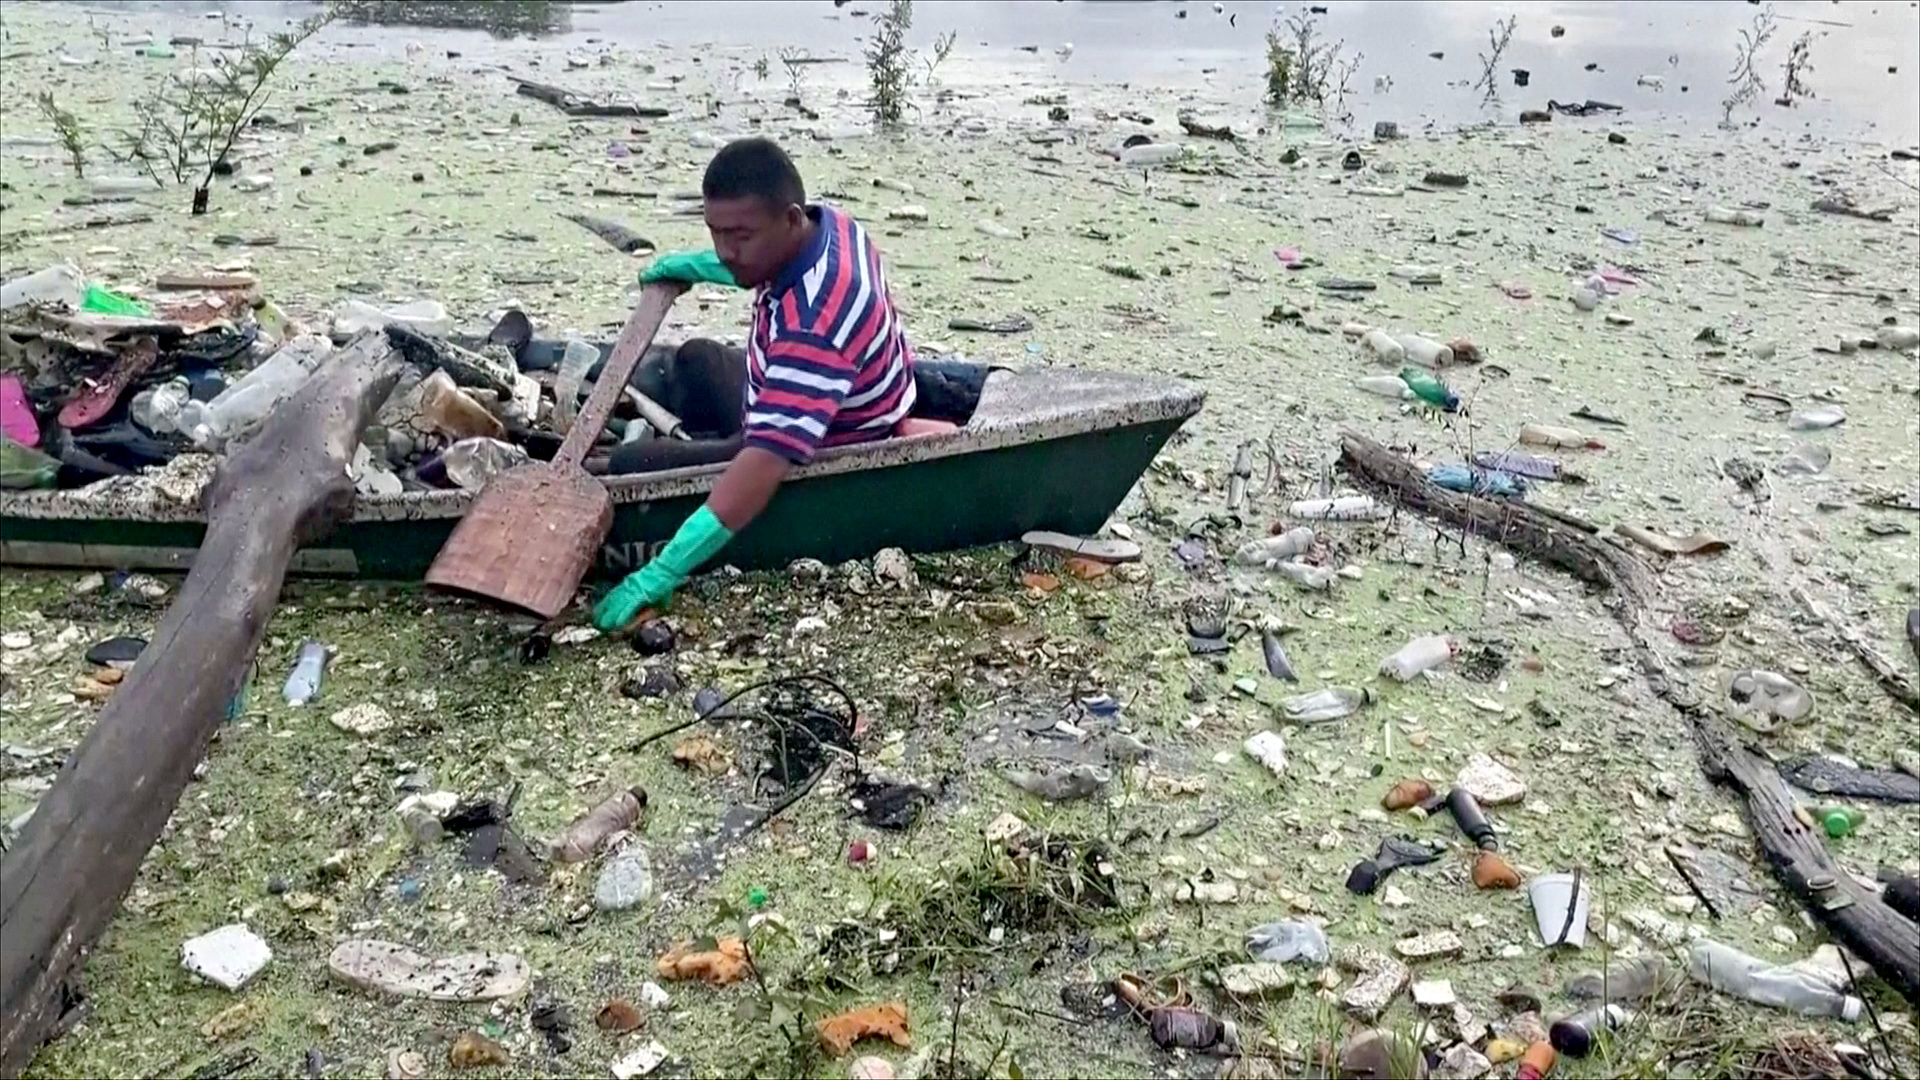 Крупнейшее пресноводное озеро Сальвадора утопает в мусоре